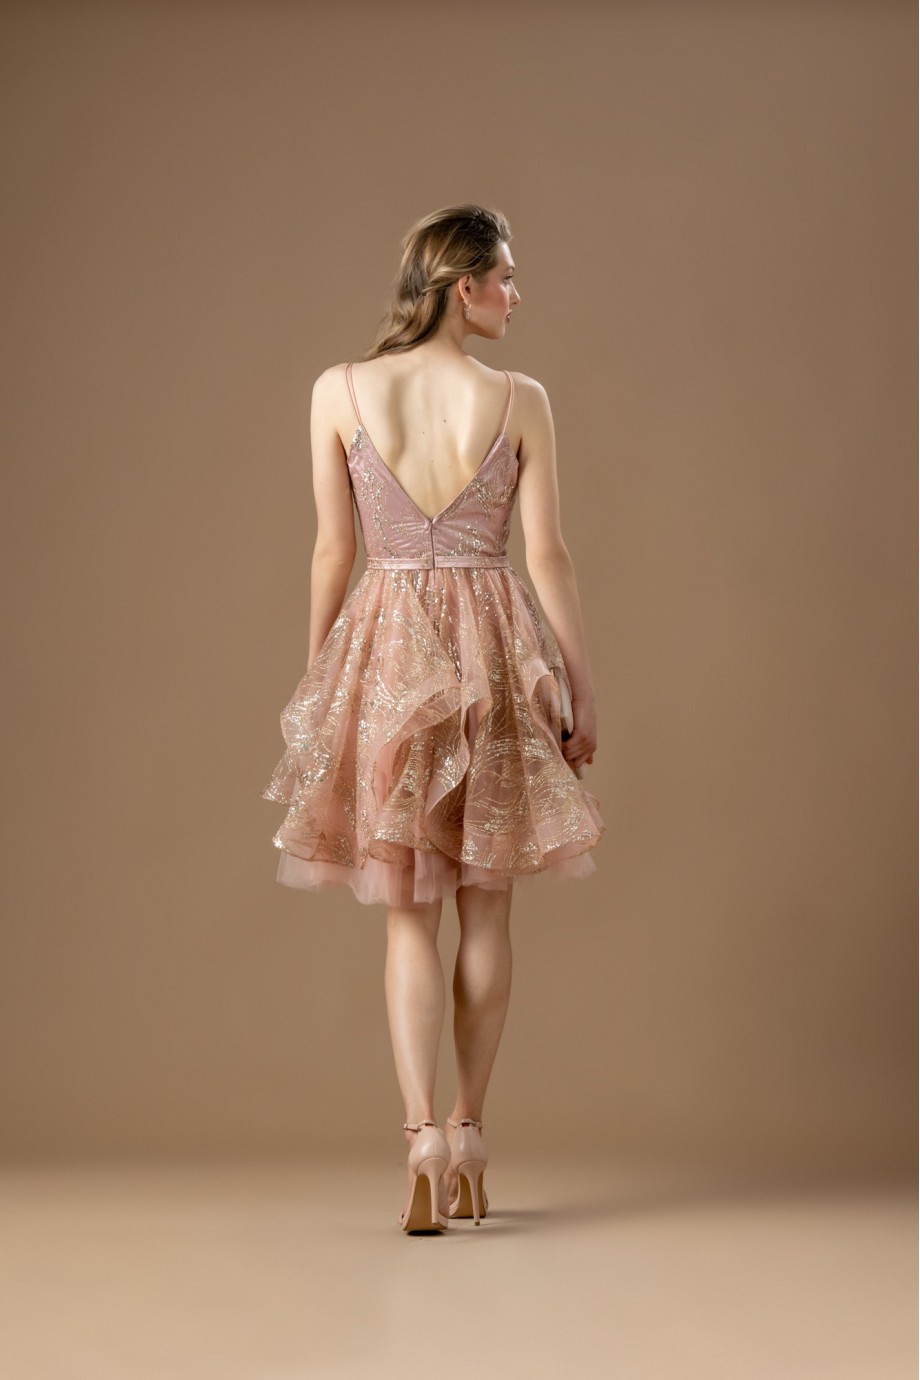 Κοντό ροζ φόρεμα με τούλινη φούστα.